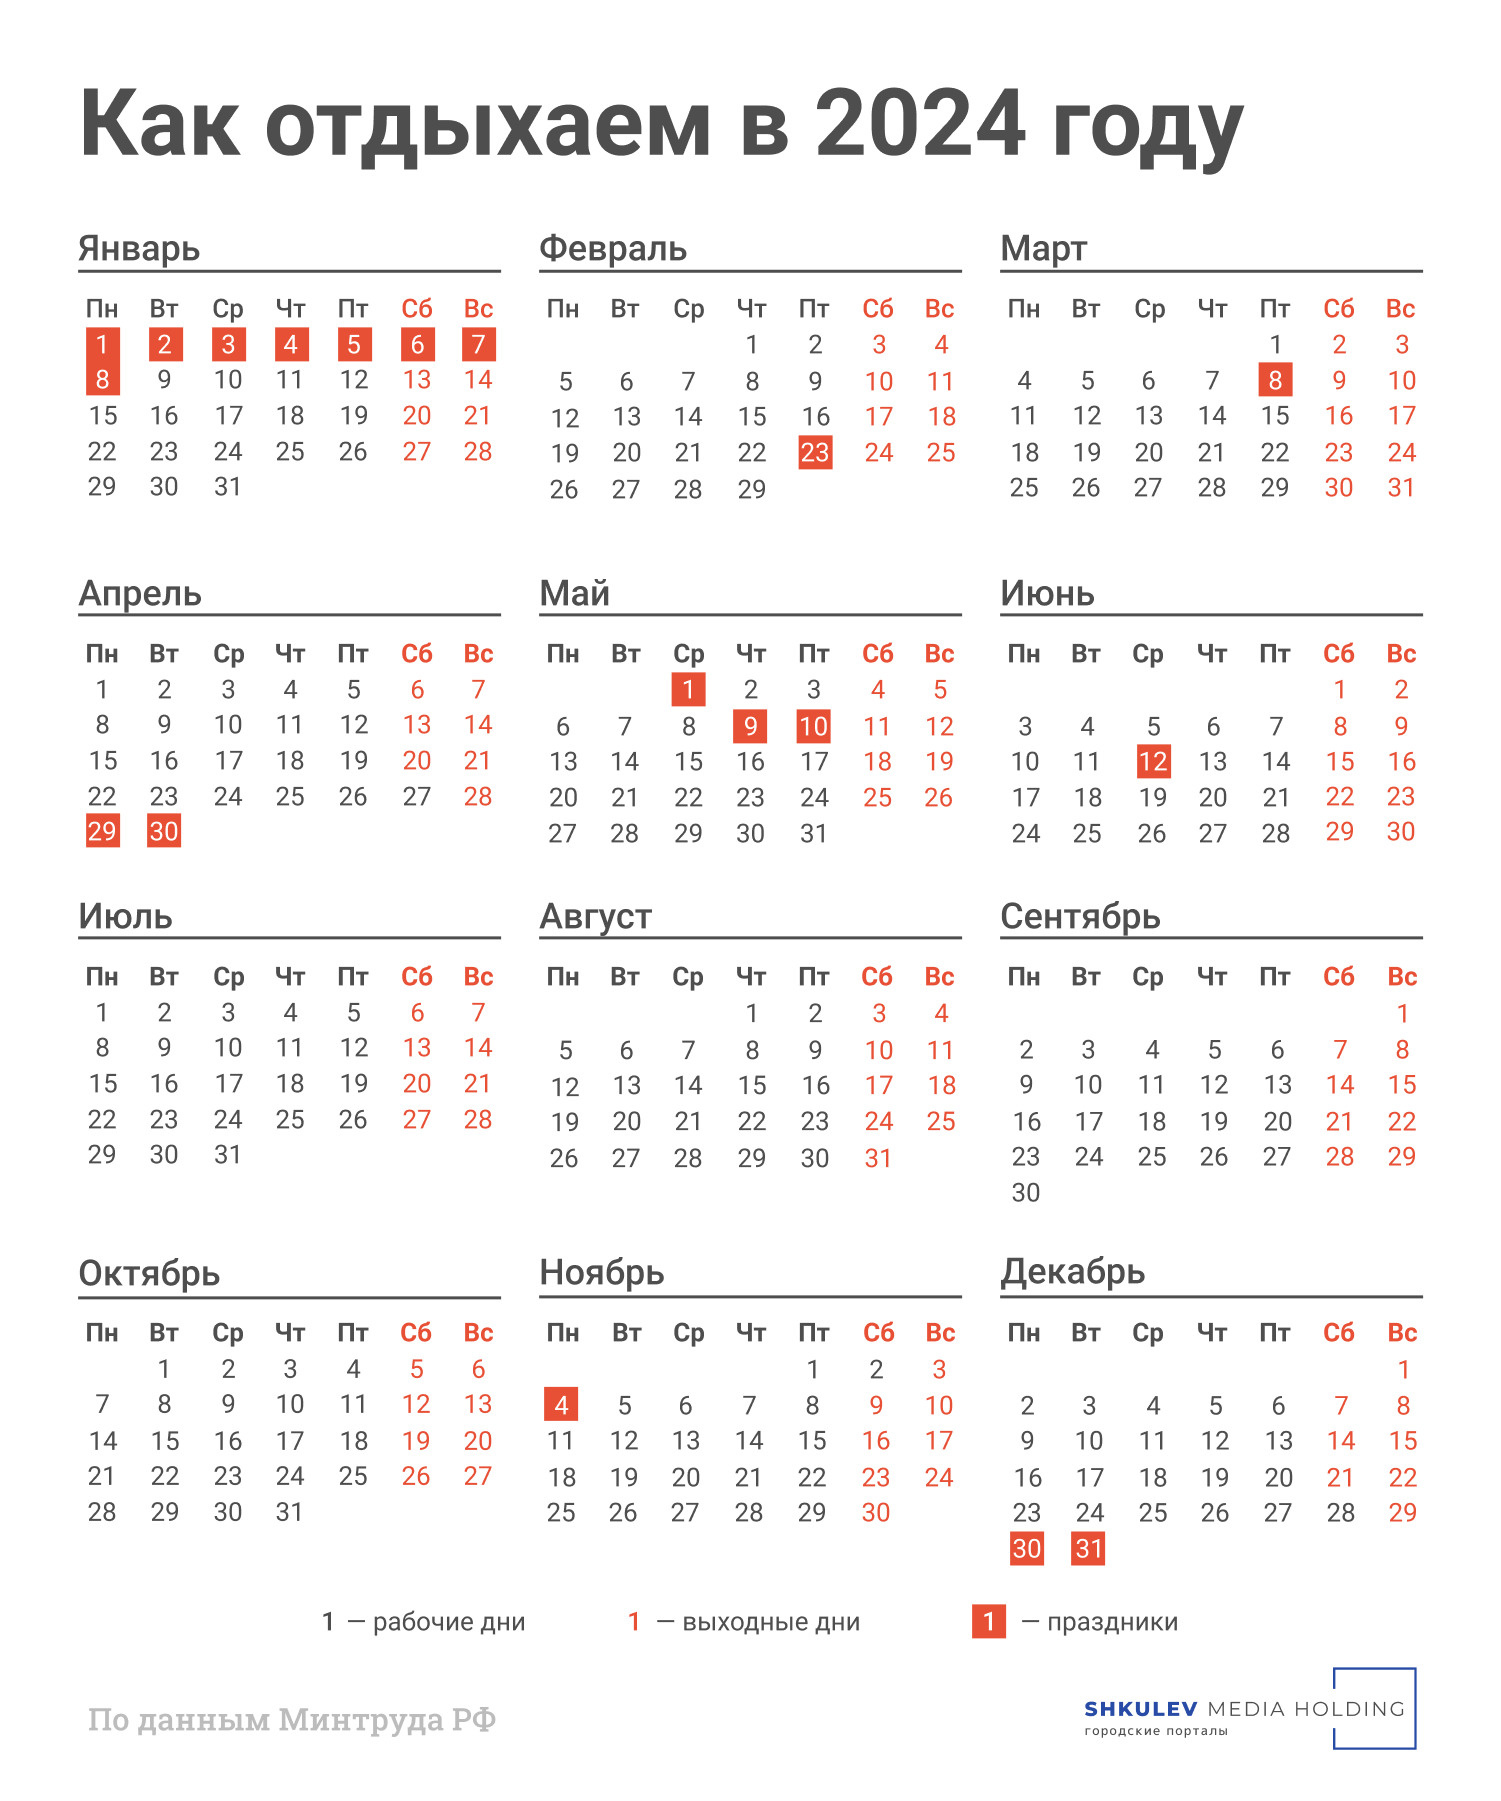 Производственный календарь — 2024: как работаем и отдыхаем в праздники - 9 января  2024 - Фонтанка.Ру